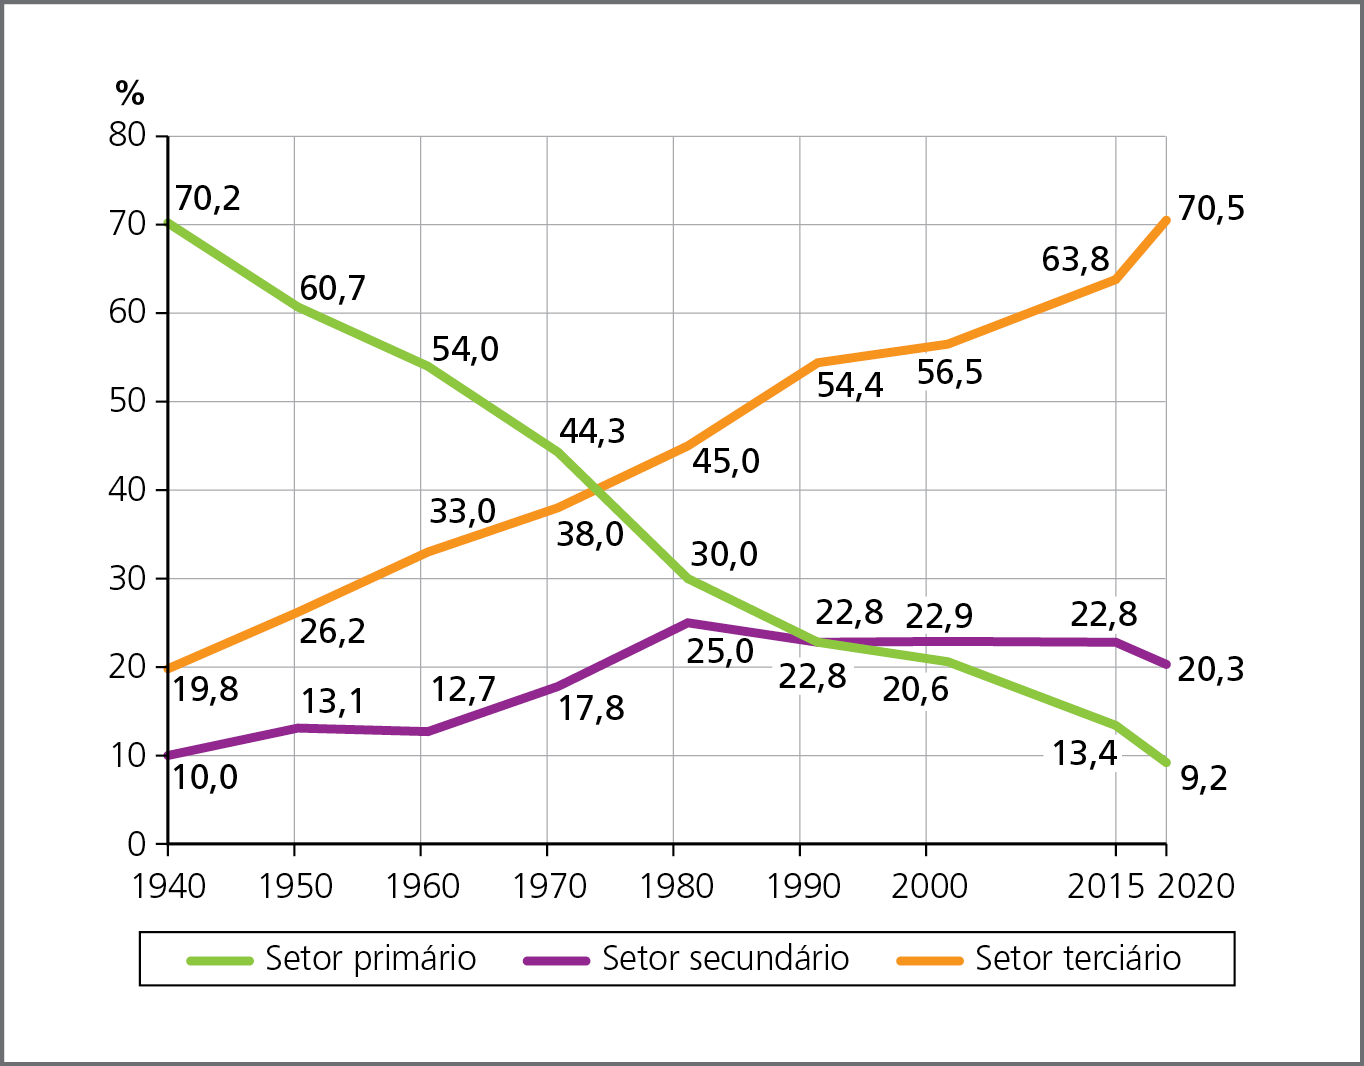 Gráfico. Brasil: distribuição da PEA por setores de produção, em porcentagem, de 1940 a 2020. 
Gráfico de linhas: linha verde representa o setor primário, linha roxa o secundário e linha laranja o terciário. 
1940: setor primário: 70,2 por cento, setor secundário: 10,0 por cento e terciário: 19,8 por cento. 
1950: setor primário: 60,7 por cento, secundário: 13,1 por cento e terciário: 26,2 por cento.
1960: setor primário: 54,0 por cento, secundário: 12,7 por cento e terciário: 33,0 por cento. 
1970: setor primário: 44,3 por cento, secundário: 17,8 por cento e terciário: 38,0 por cento.
1980: setor primário: 30,0 por cento, secundário: 25,0 por cento e terciário: 45,0 por cento. 
1990: setor primário: 22,8 por cento, secundário: 22,8 por cento e terciário: 54,4 por cento. 
2000: setor primário: 20,6 por cento, secundário: 22,9 por cento e terciário: 56,5 por cento. 
2015: setor primário: 13,4 por cento, secundário: 22,8 por cento e terciário: 63,8 por cento.
2020: setor primário: 9,2 por cento, secundário: 20,3 por cento e terciário: 70,5 por cento.